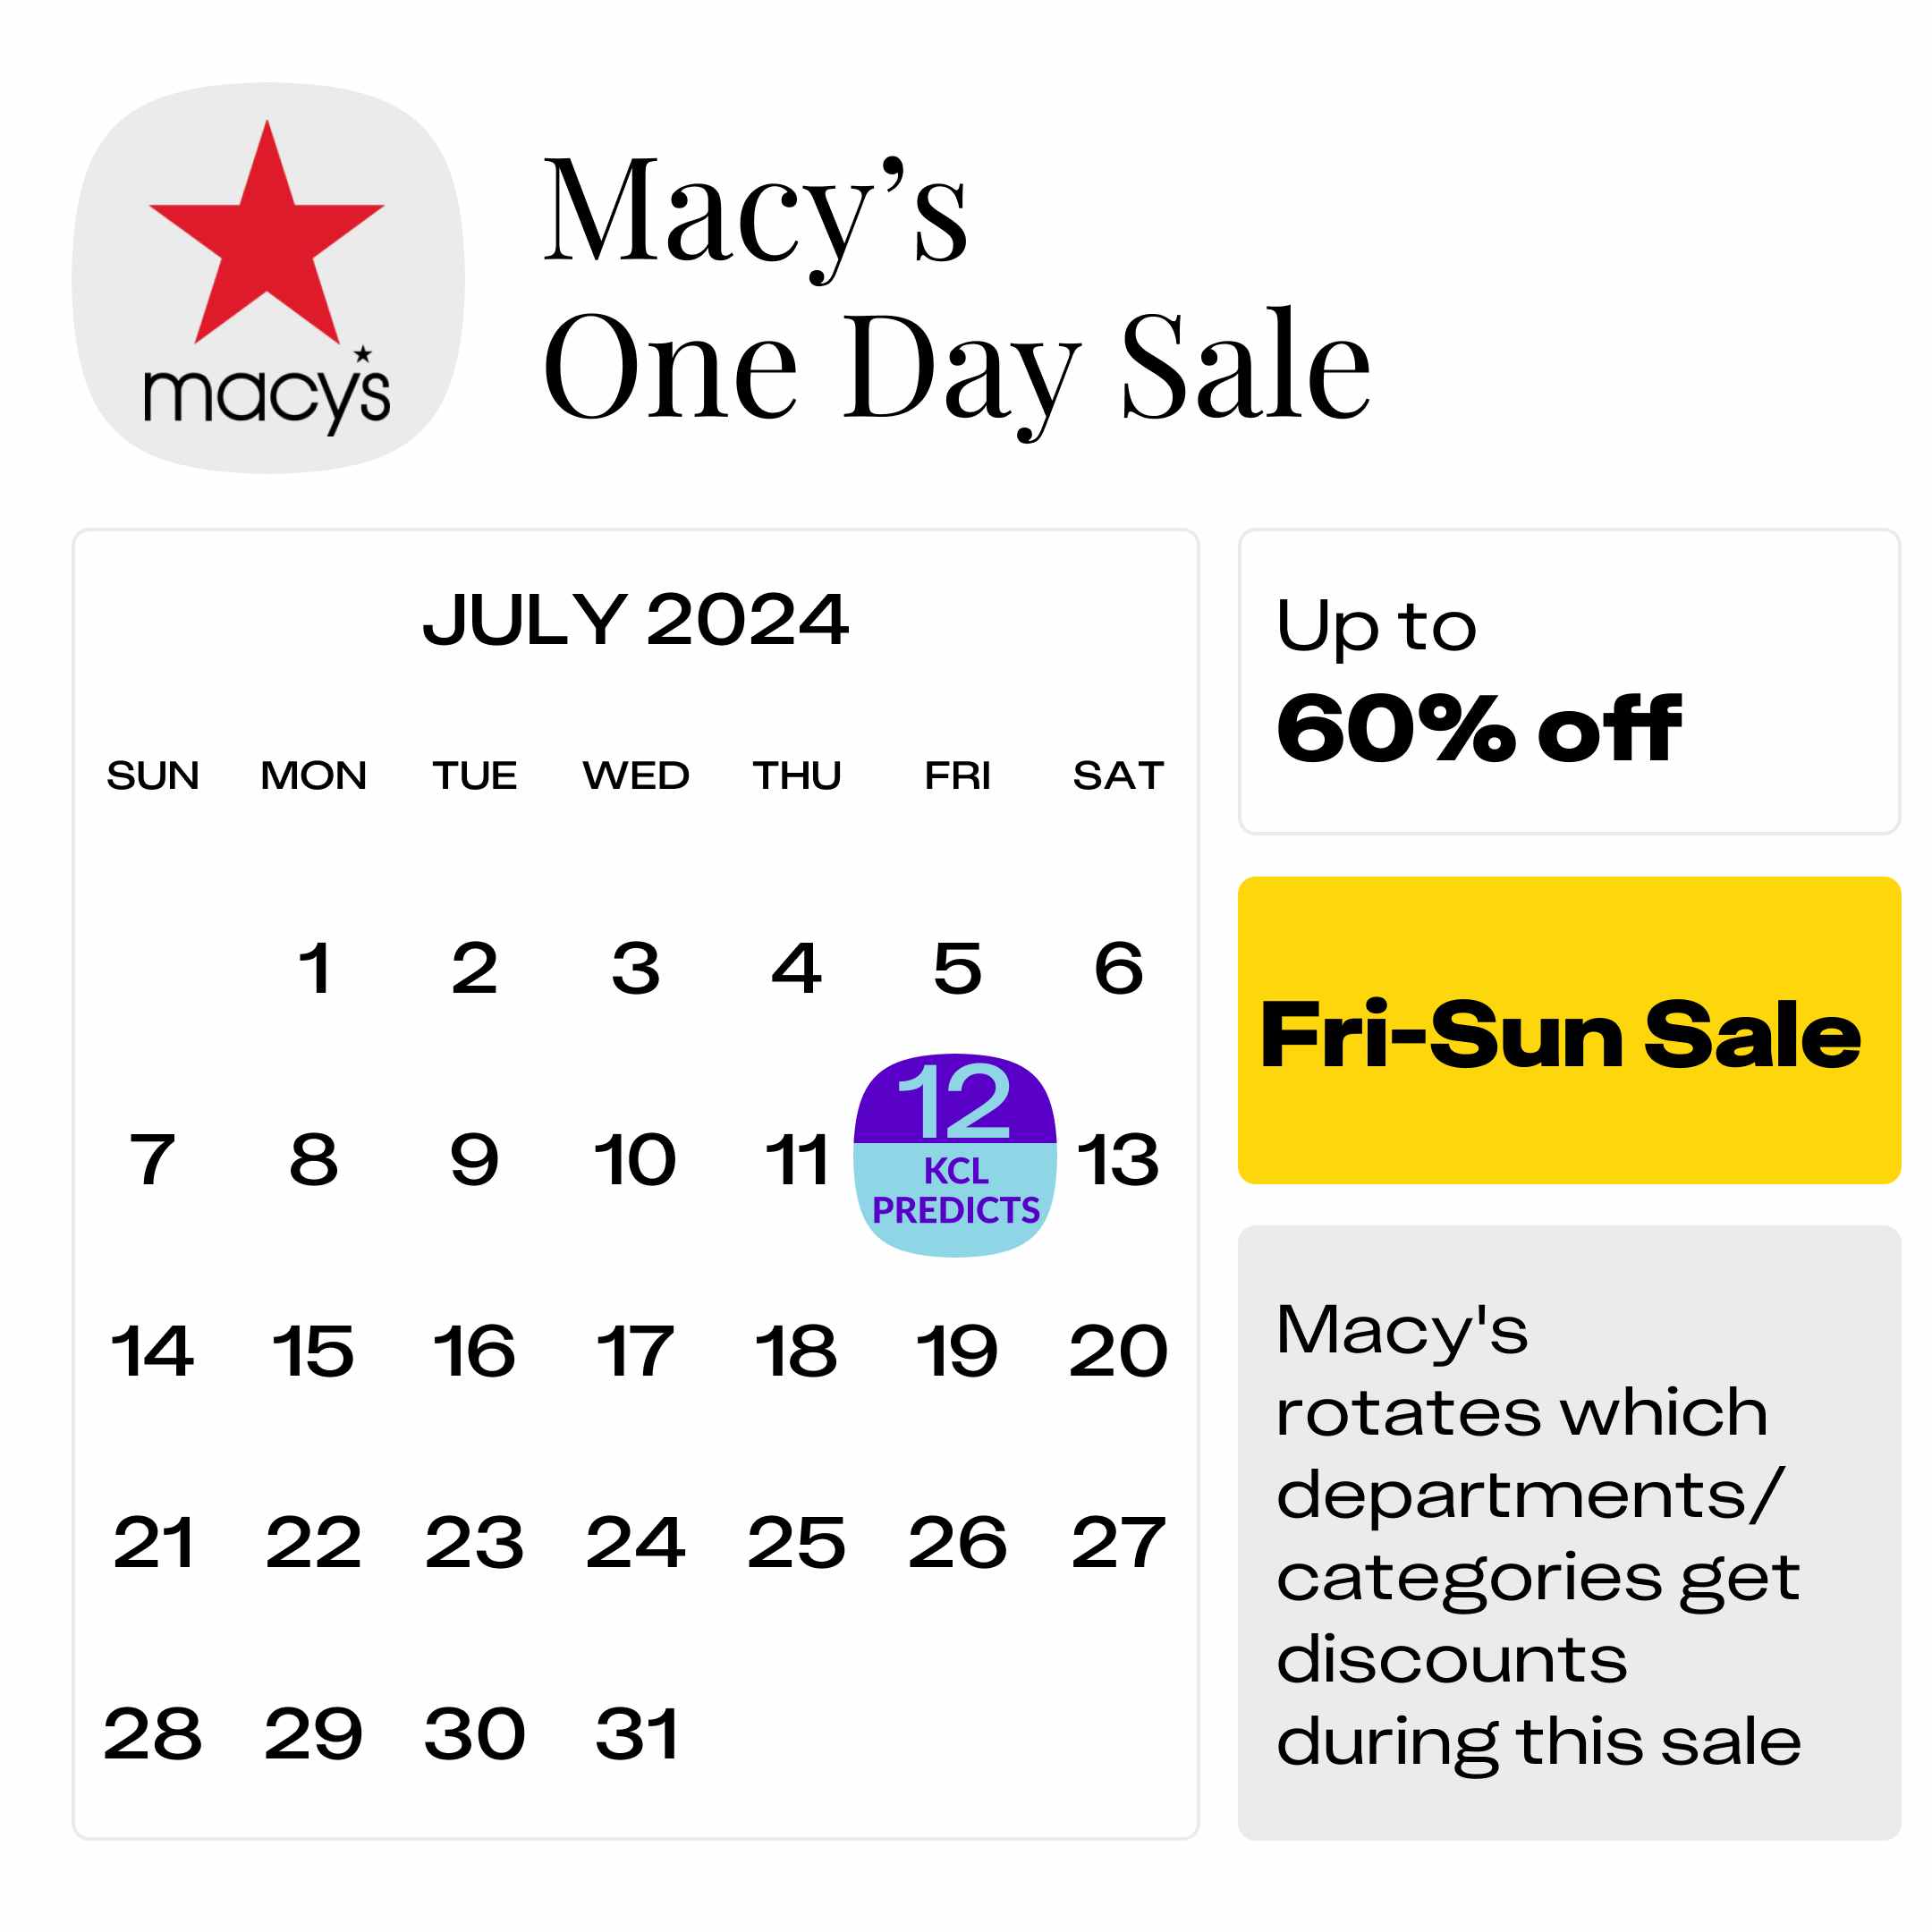 Macys-One-Day-Sale